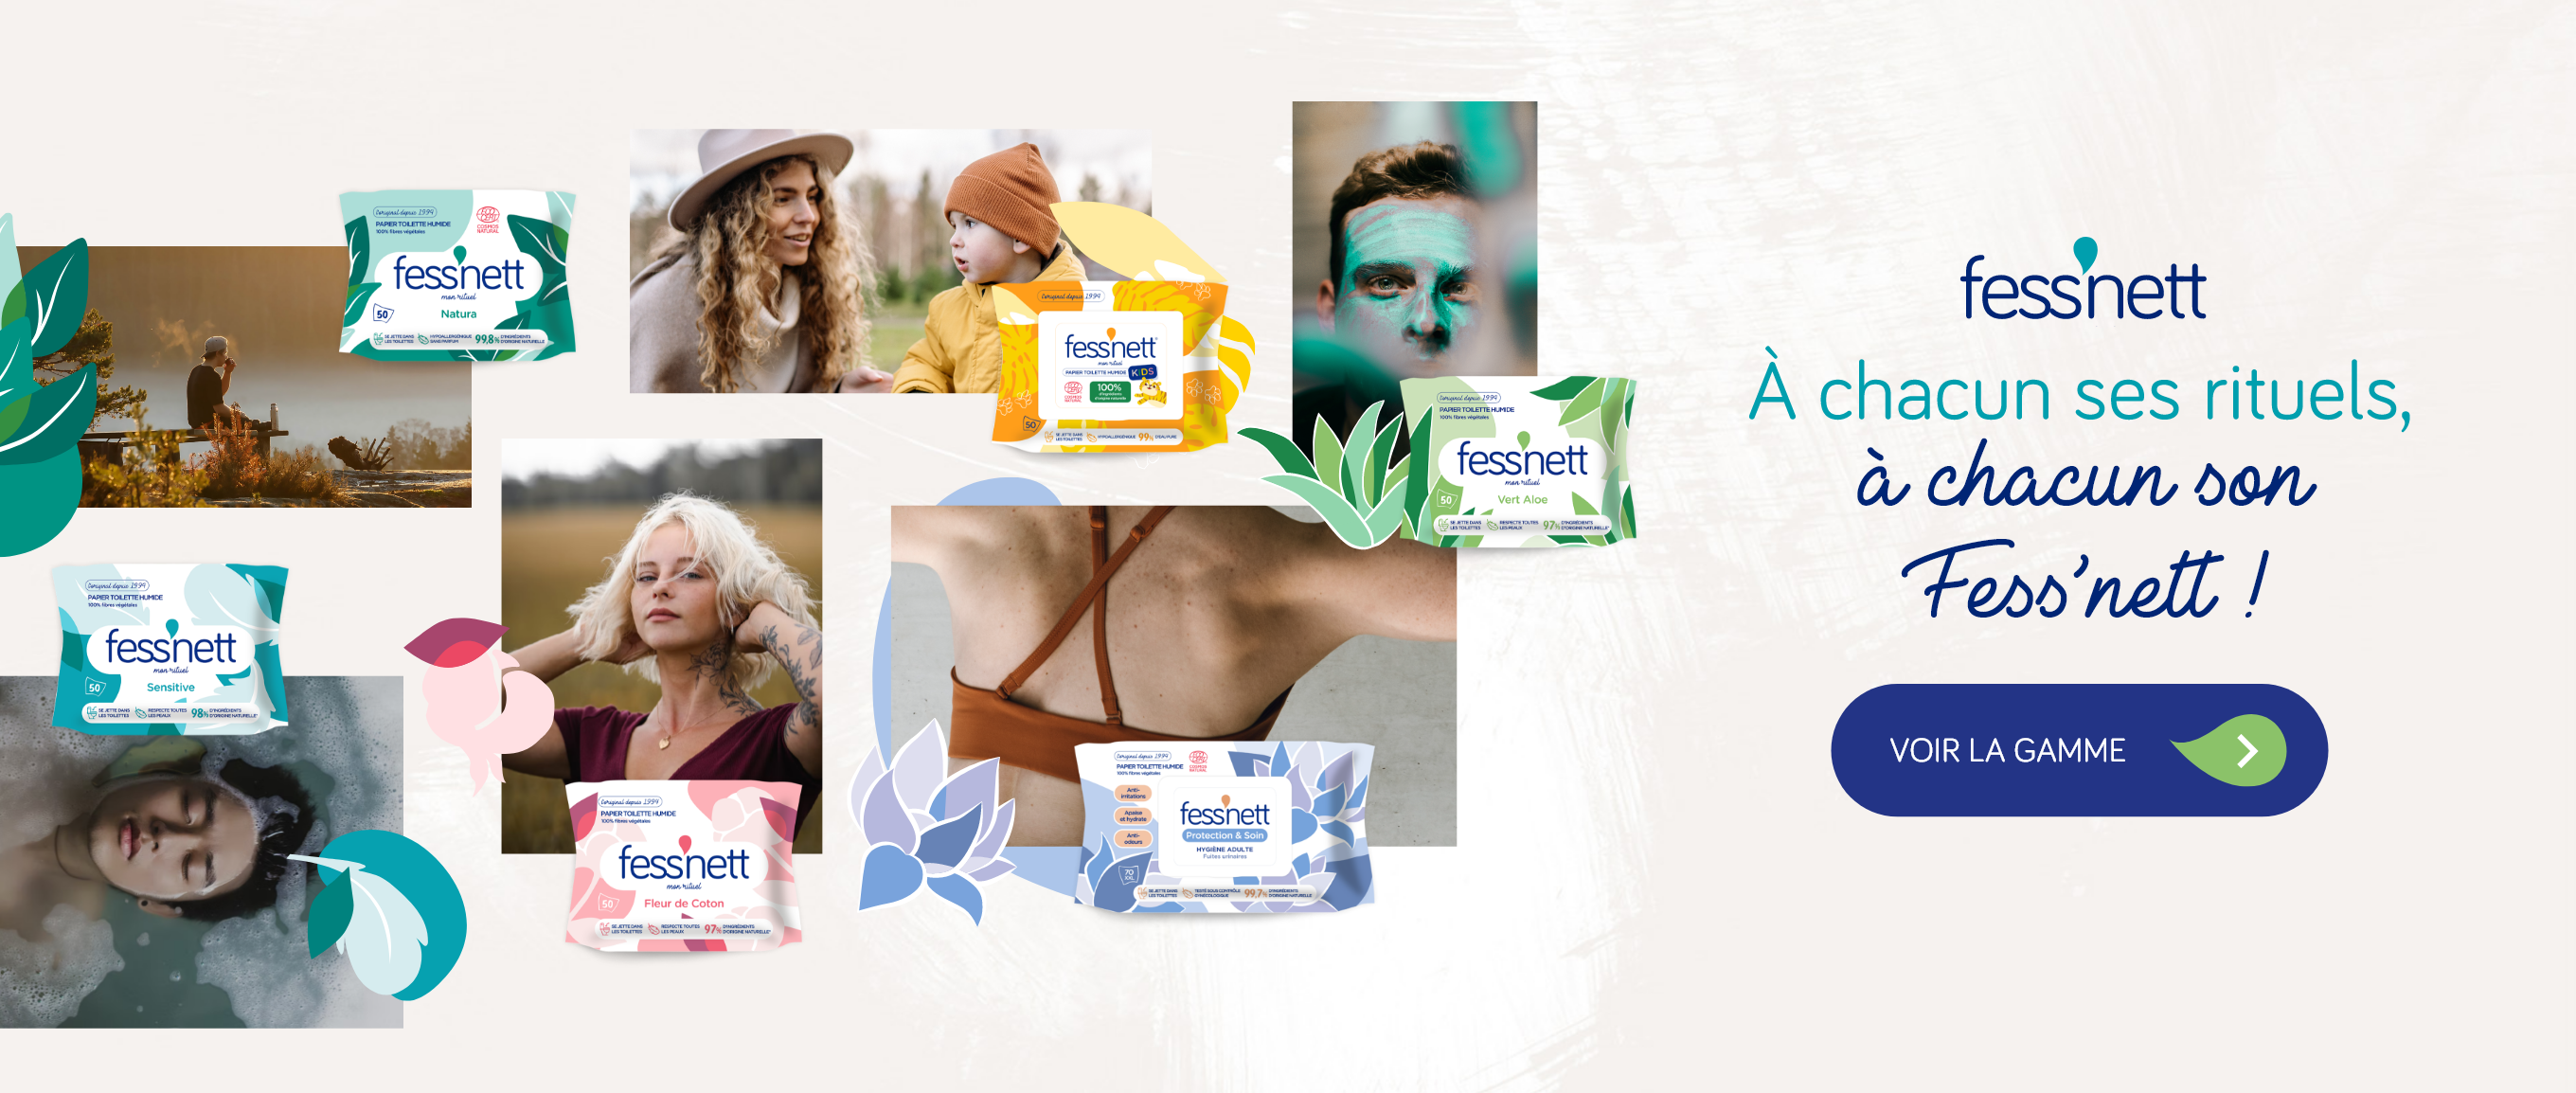 Achat Promotion Fess Net Lingettes papier toilette pour peaux normales